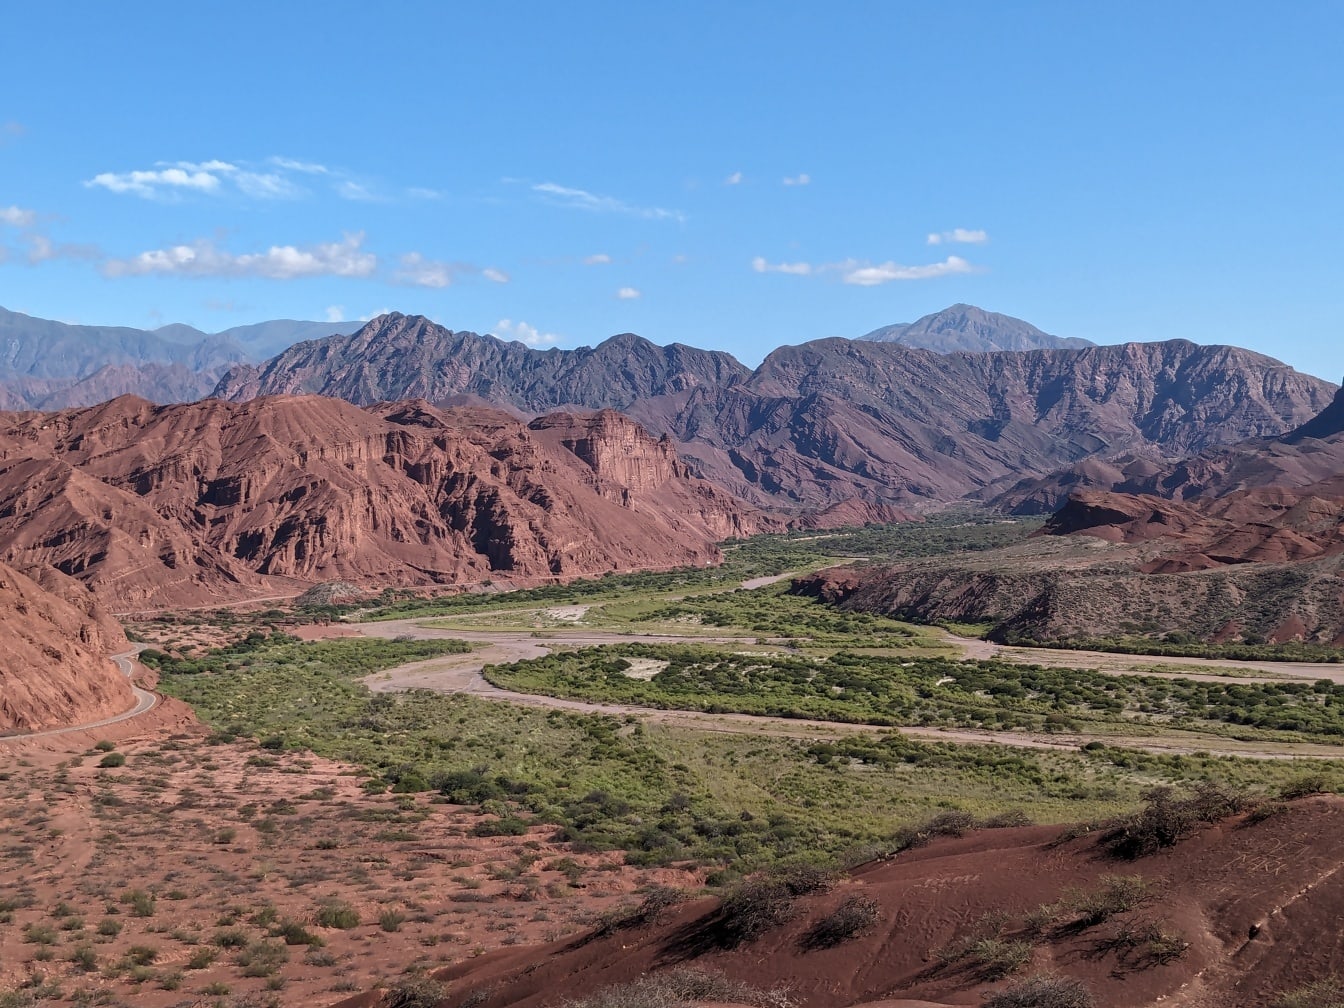 Peisaj din valea Calchaqui din provincia Salta din Argentina cu munți roșii